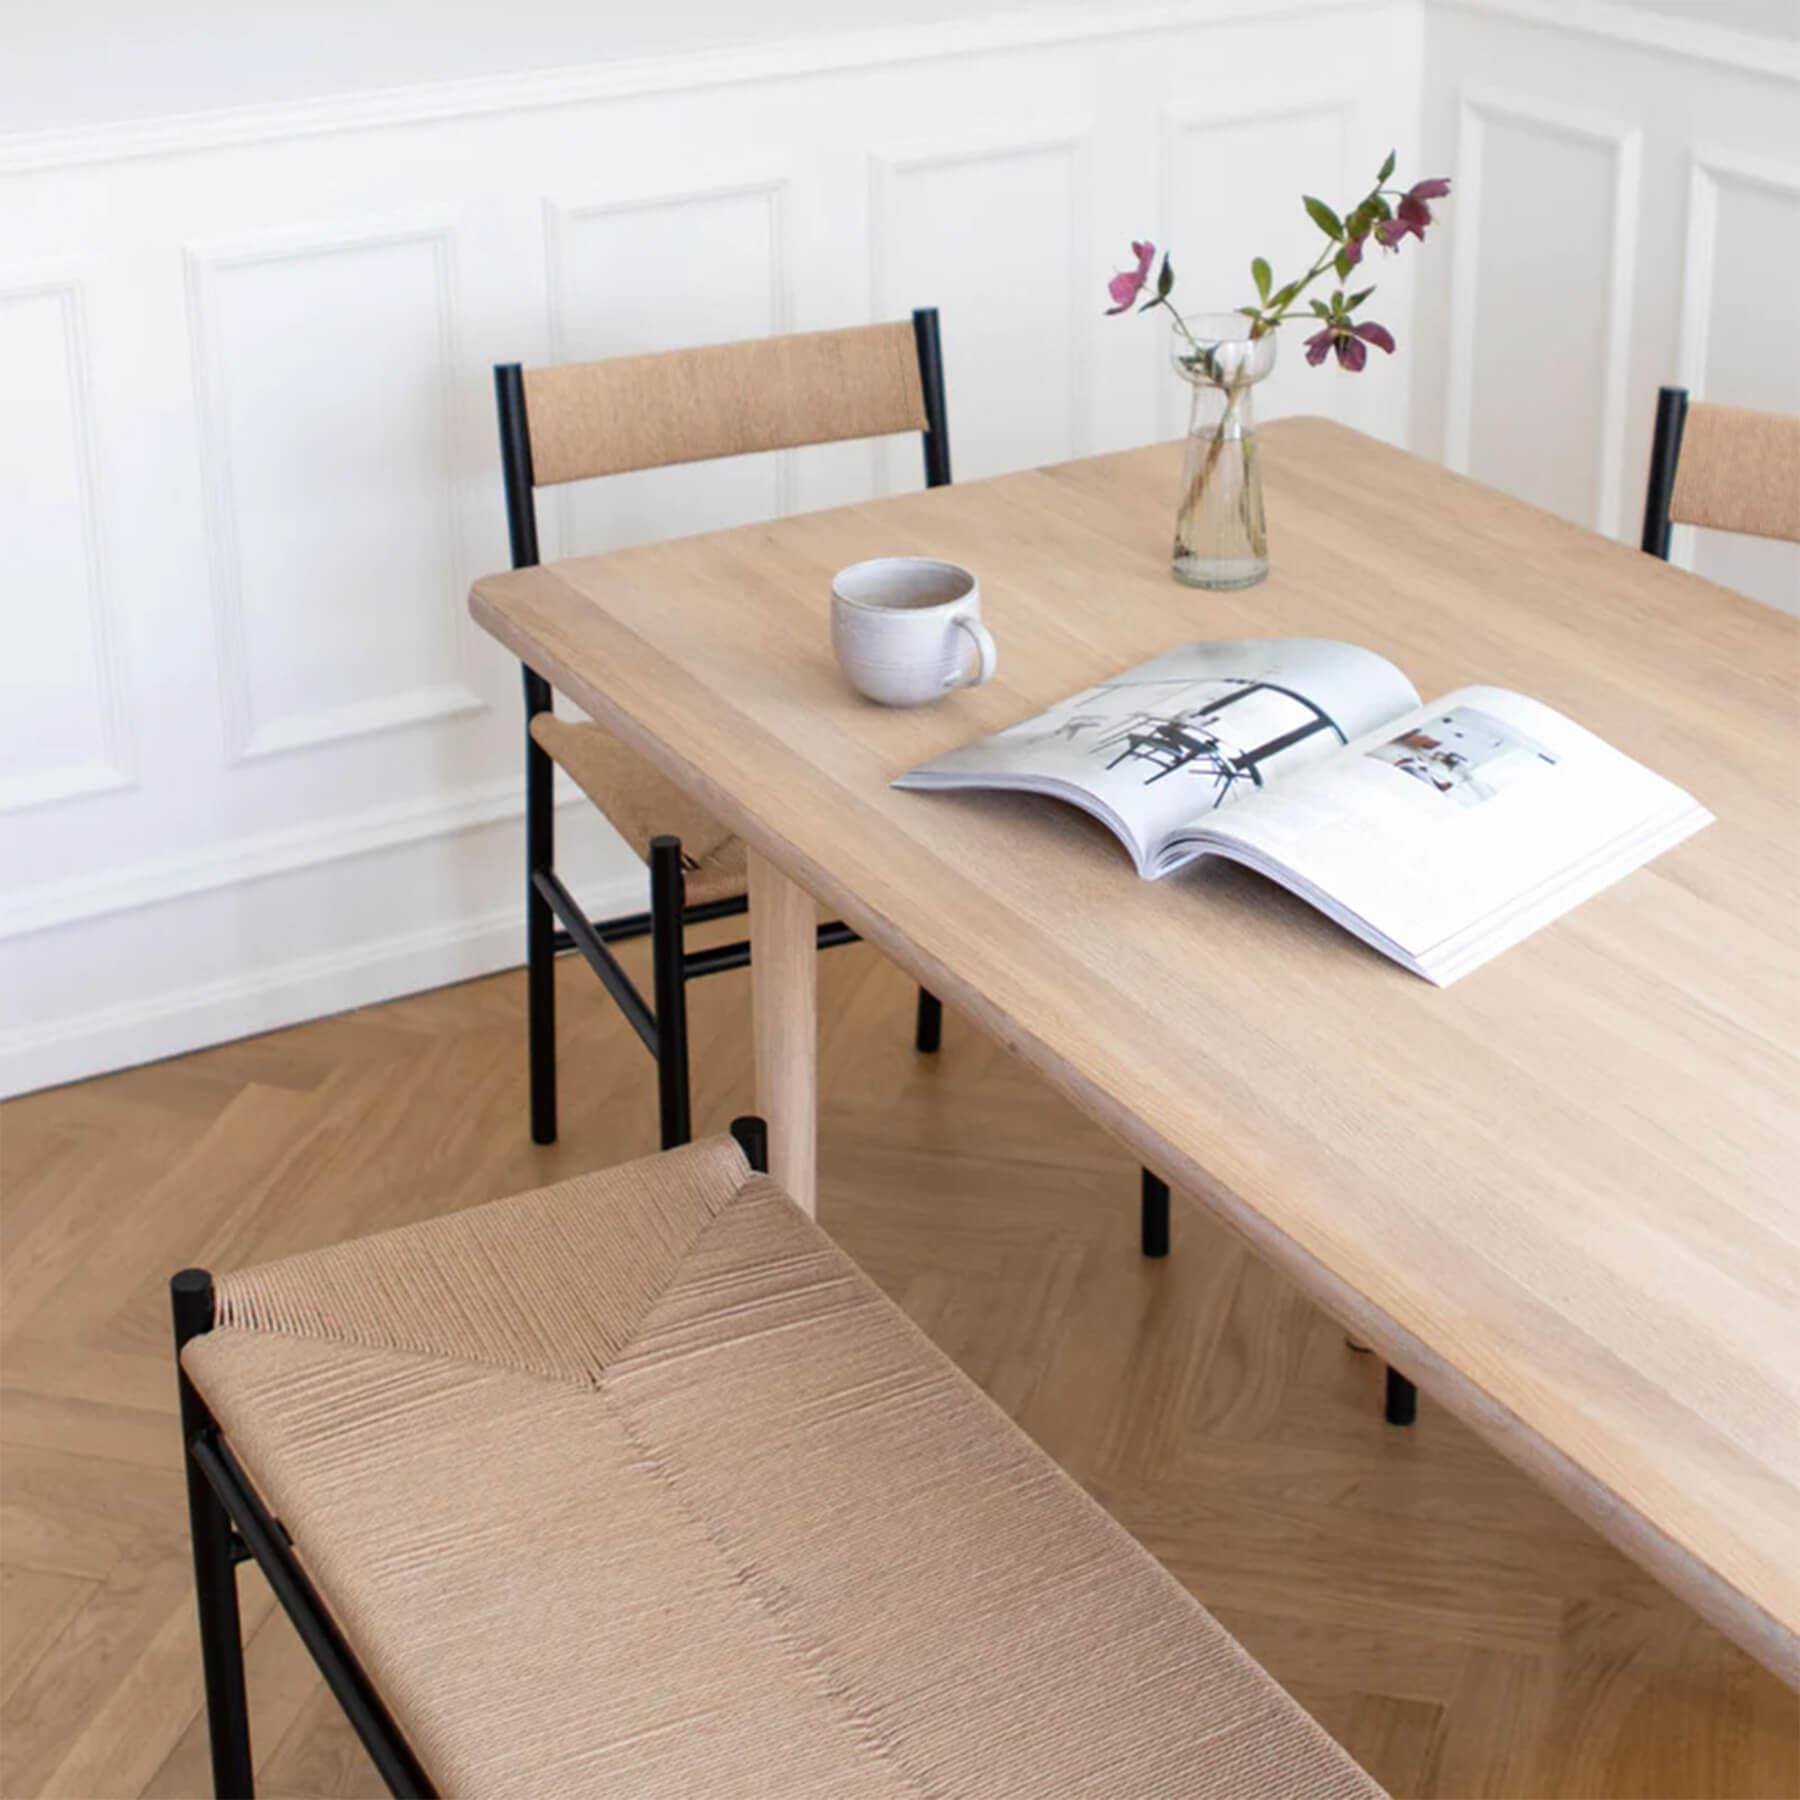 Make Nordic Holmen Rectangular Dining Table Large White Oil Oak Length 300cm Width 92cm Without Extra Leaves Light Wood Designer Furniture Fr